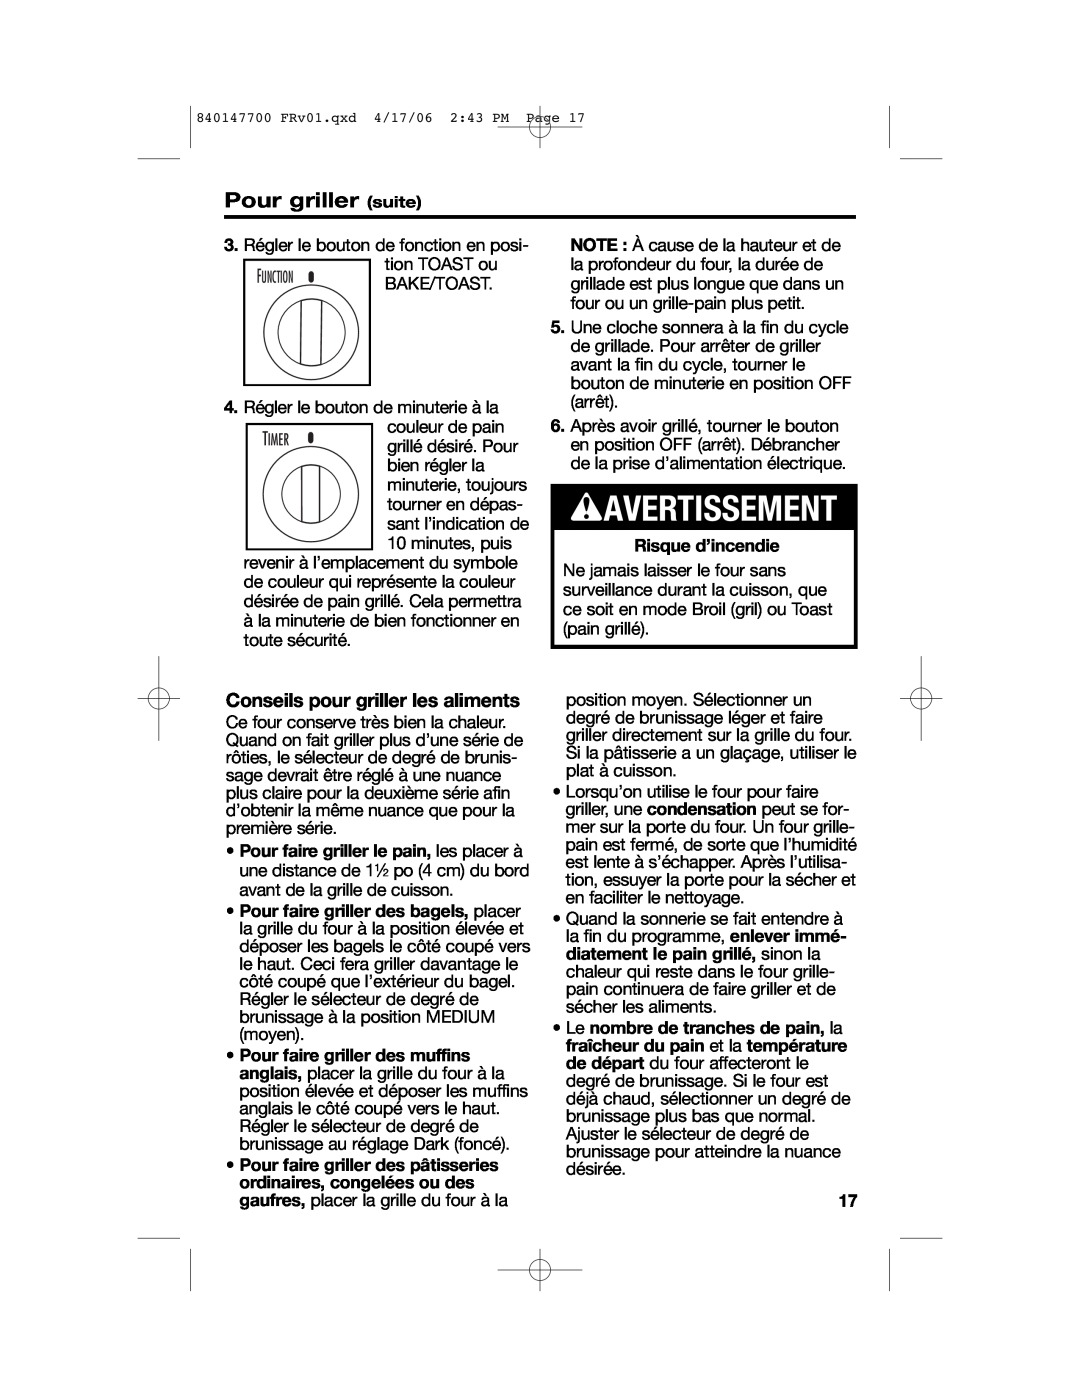 Hamilton Beach 31180 manual Pour griller suite, Conseils pour griller les aliments, Risque d’incendie, wAVERTISSEMENT 